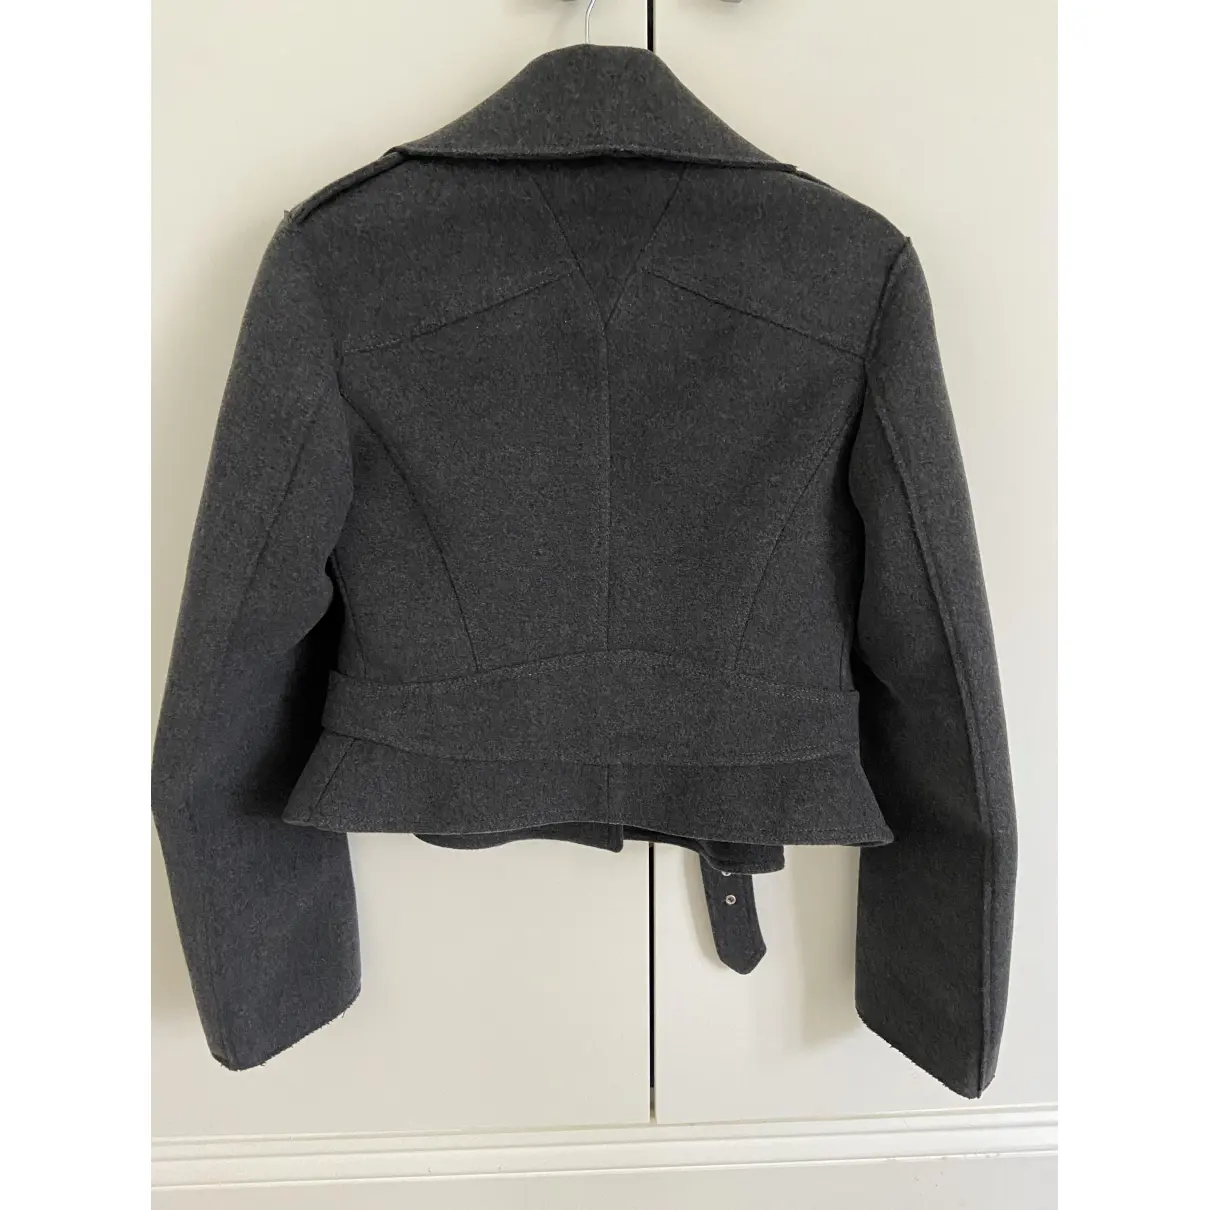 Buy Alexander McQueen Wool jacket online